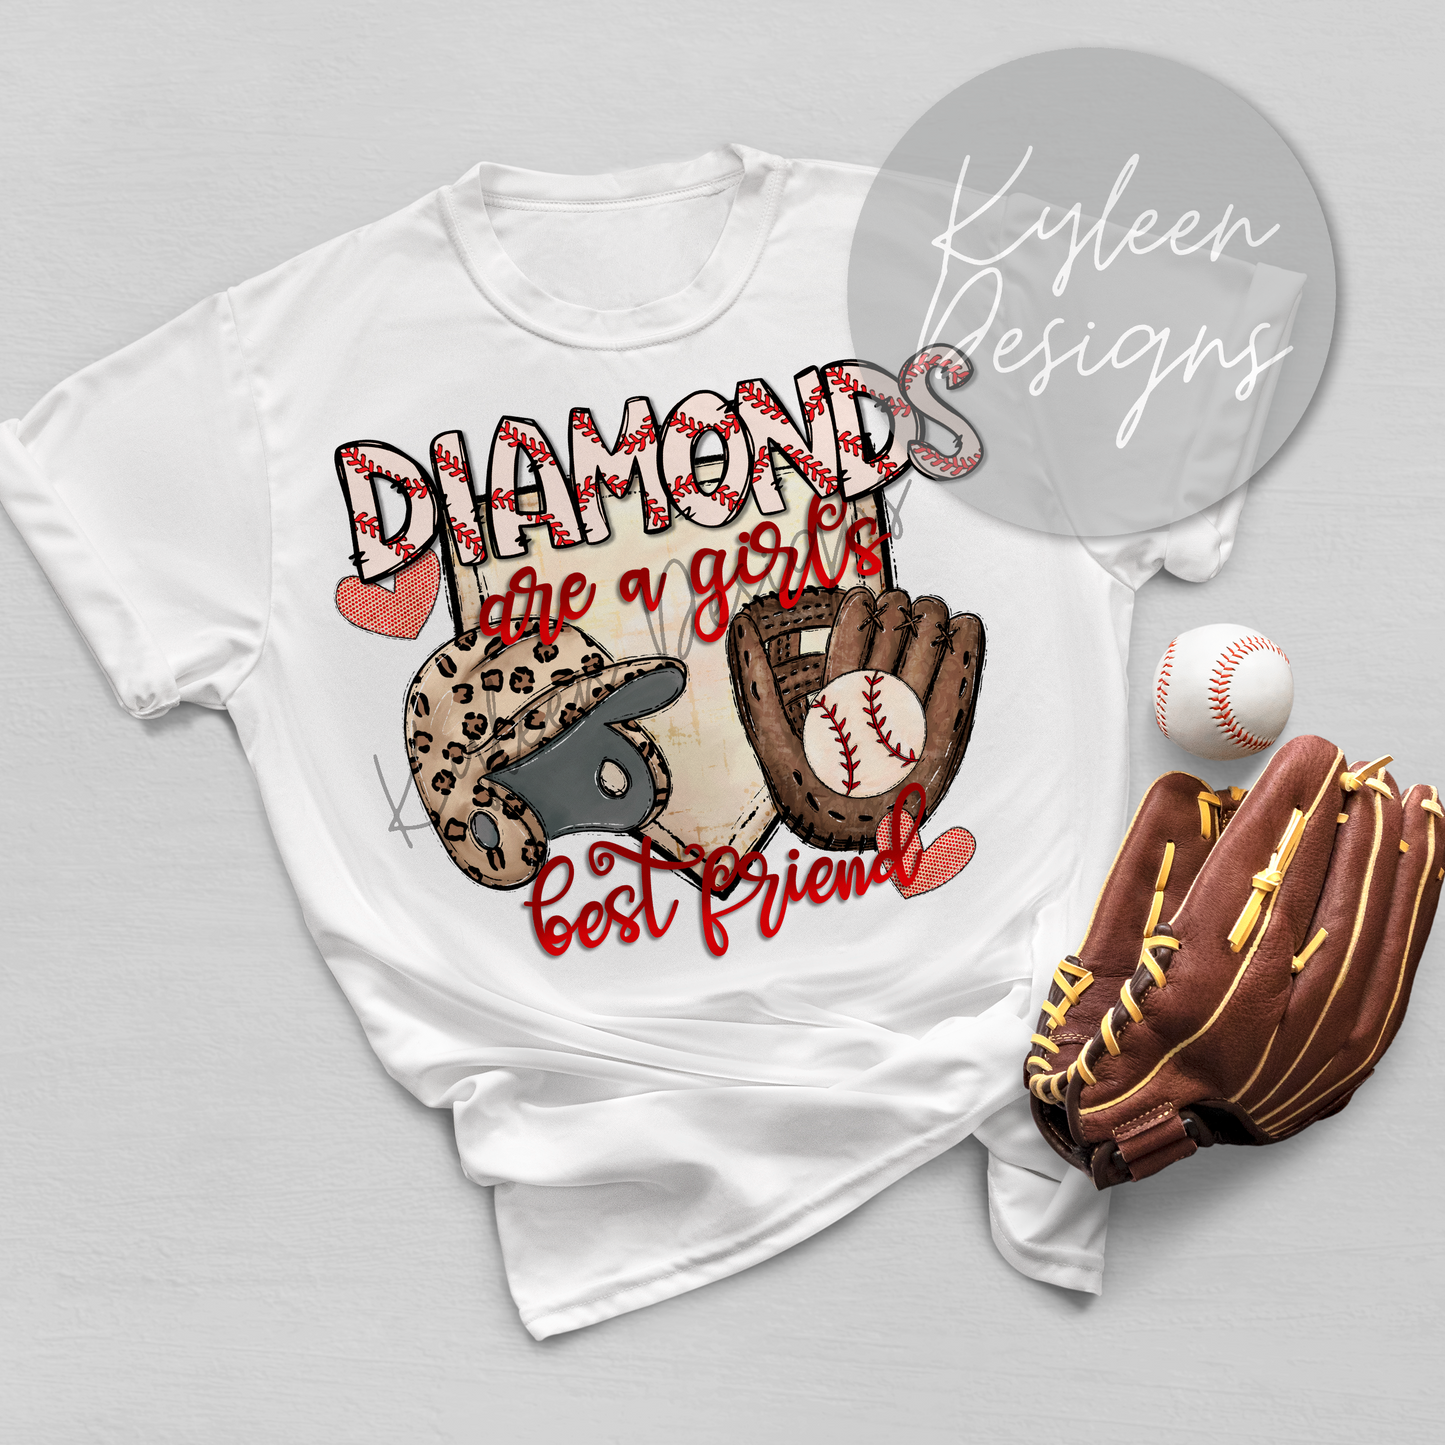 Diamonds are a girls best friend T-shirt